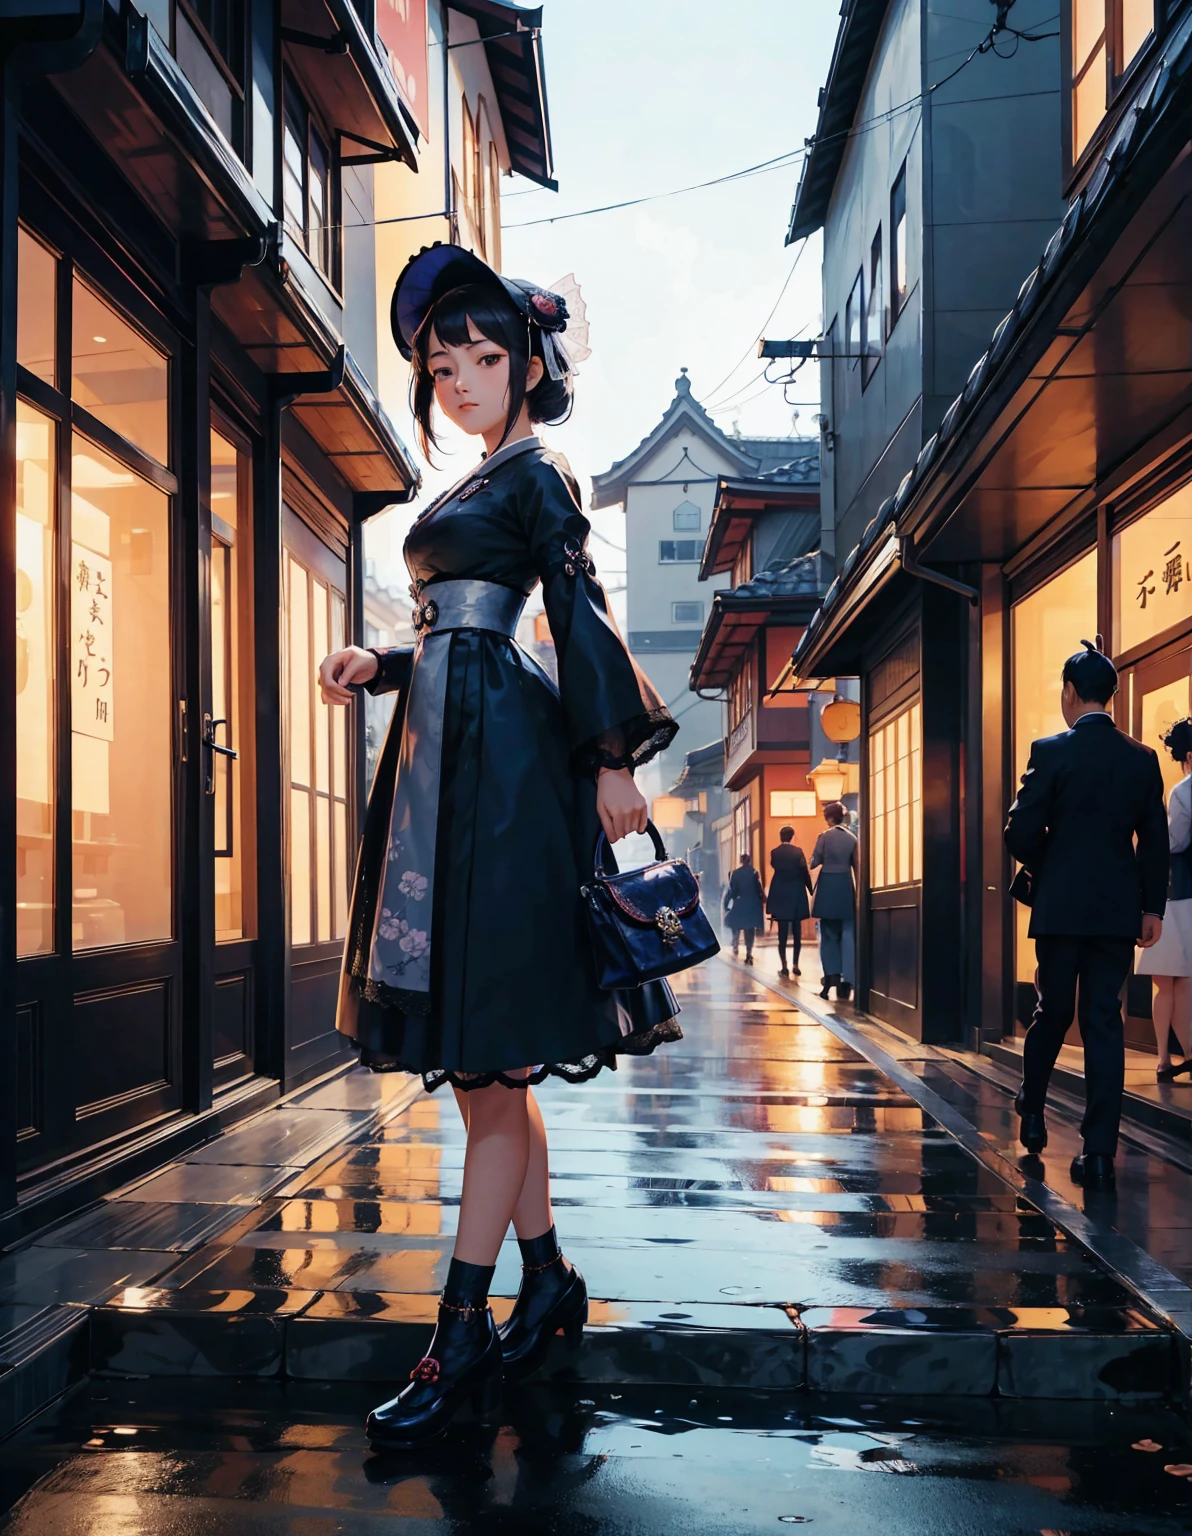 เด็กสาวแต่งกายด้วยชุดโกธิคโลลิต้าของญี่ปุ่นเดินเล่นไปตามถนนสมัยไทโช. ถนนประดับประดาด้วยโคมไฟสมัยเก่าและร้านค้าแบบดั้งเดิม. เธอมีกระเป๋าถือสไตล์วินเทจและสวมหมวกลูกไม้อันละเอียดอ่อน. ฉากนี้ผสมผสานระหว่างเสน่ห์ทางประวัติศาสตร์และความสง่างามแบบโกธิก, ลักษณะเฉพาะของสุนทรียศาสตร์โรมันไทโช. --อาร์ 3:4 --จัดสไตล์ 600 --นิจิ 6
